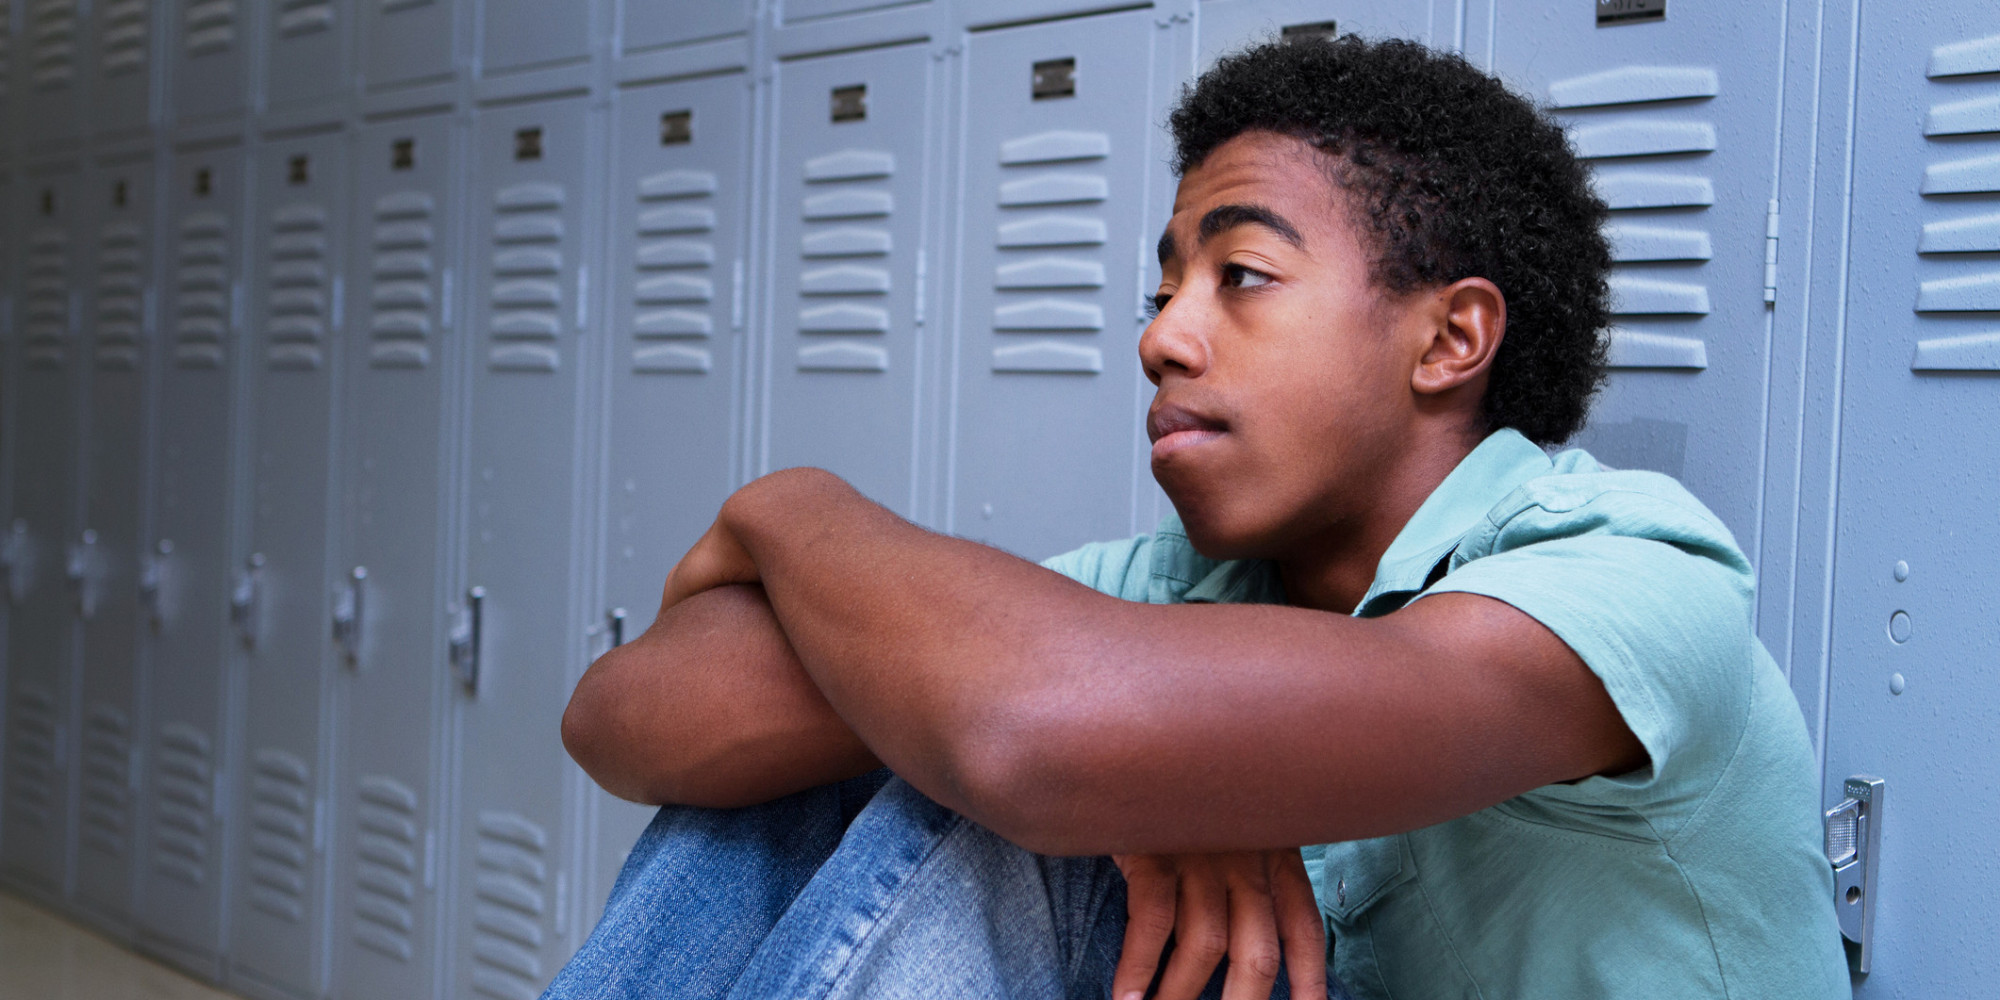 Case studies on teenage depression